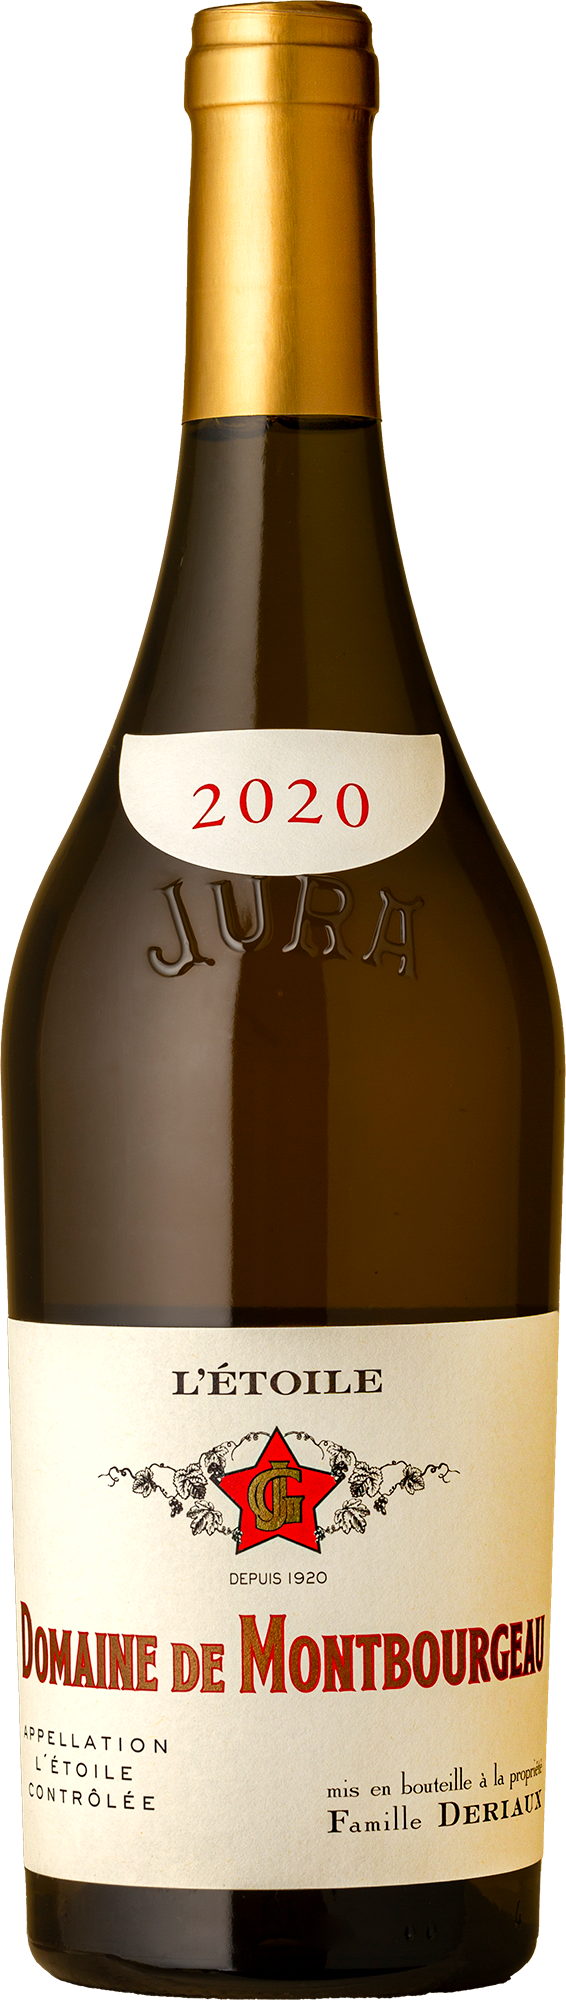 Domaine de Monbourgeau - L’Etoile Vin Blanc Chardonnay 2020 White Wine